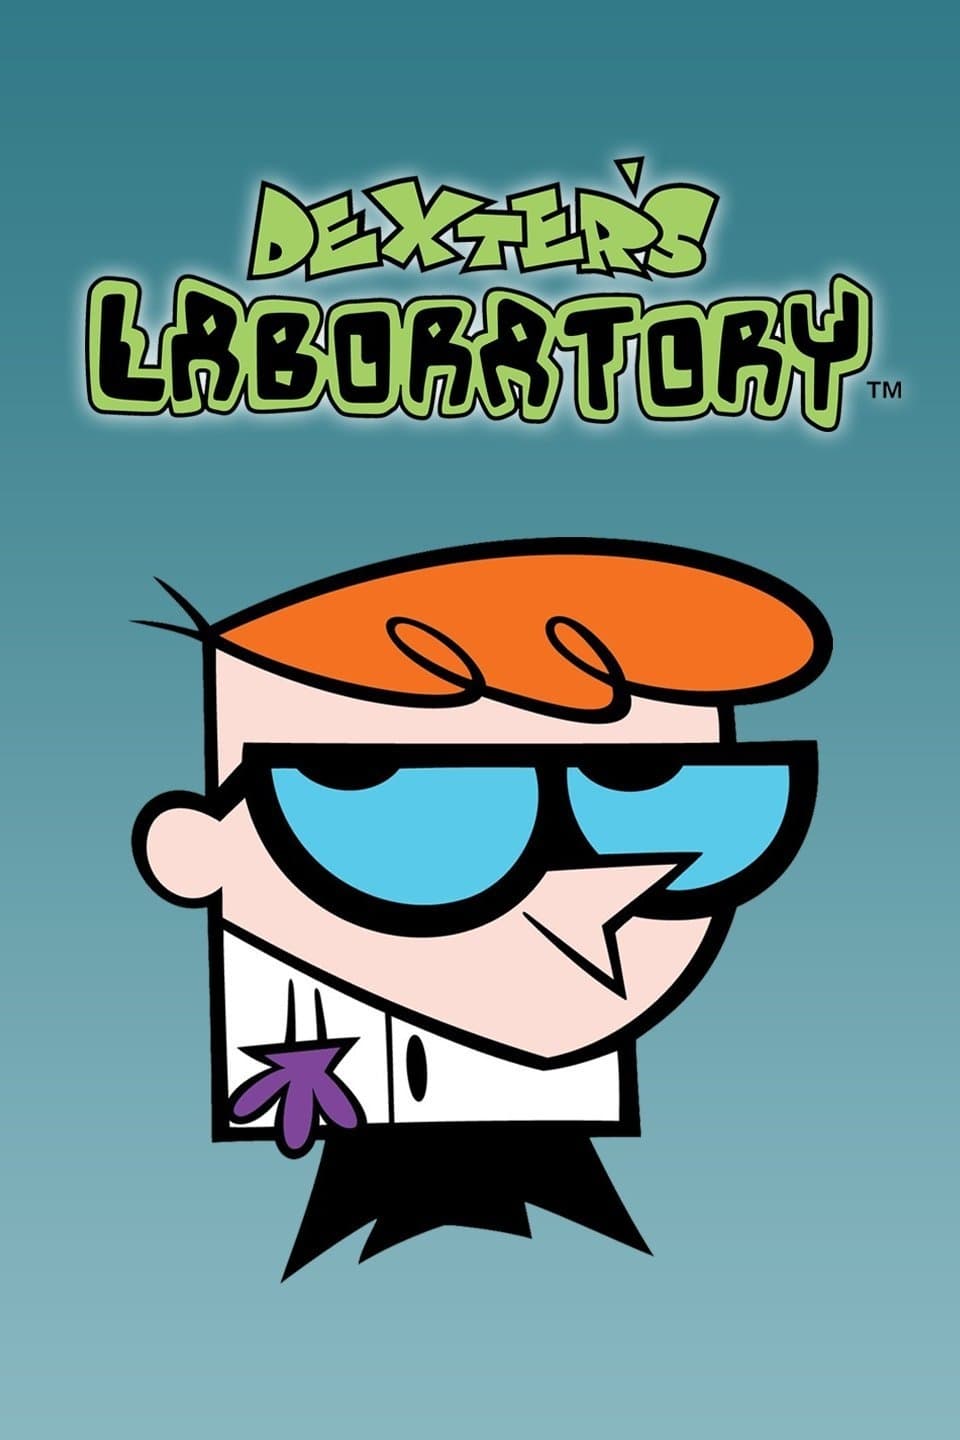 Dexter's Laboratory TV Shows About Genius